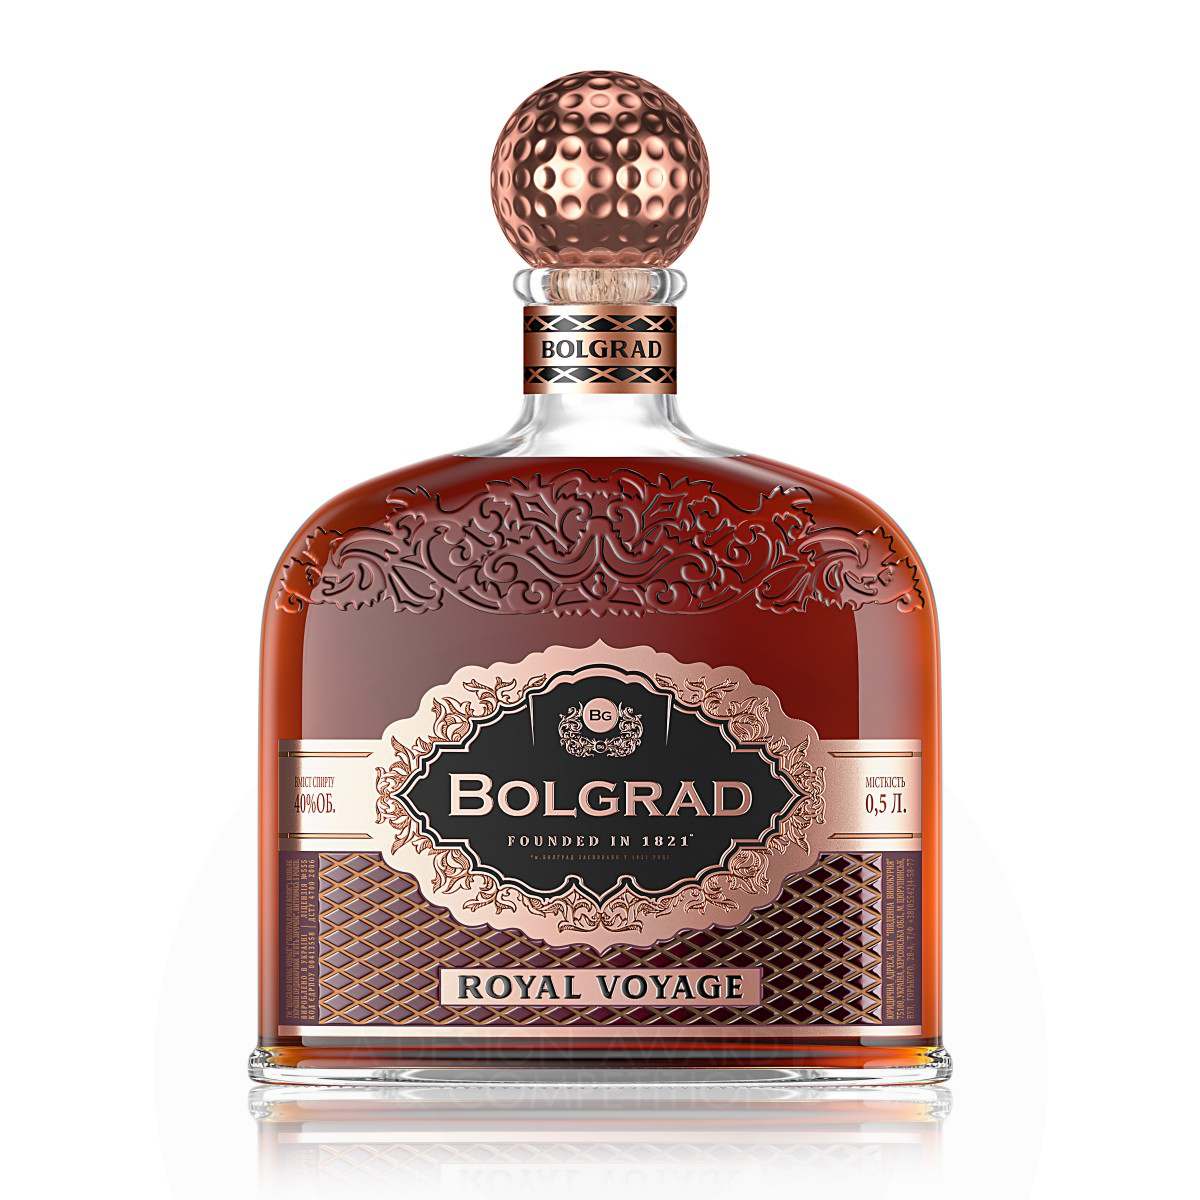 Bolgrad Brandy XO Brandies Label by Valerii Sumilov Silver Packaging Design Award Winner 2019 